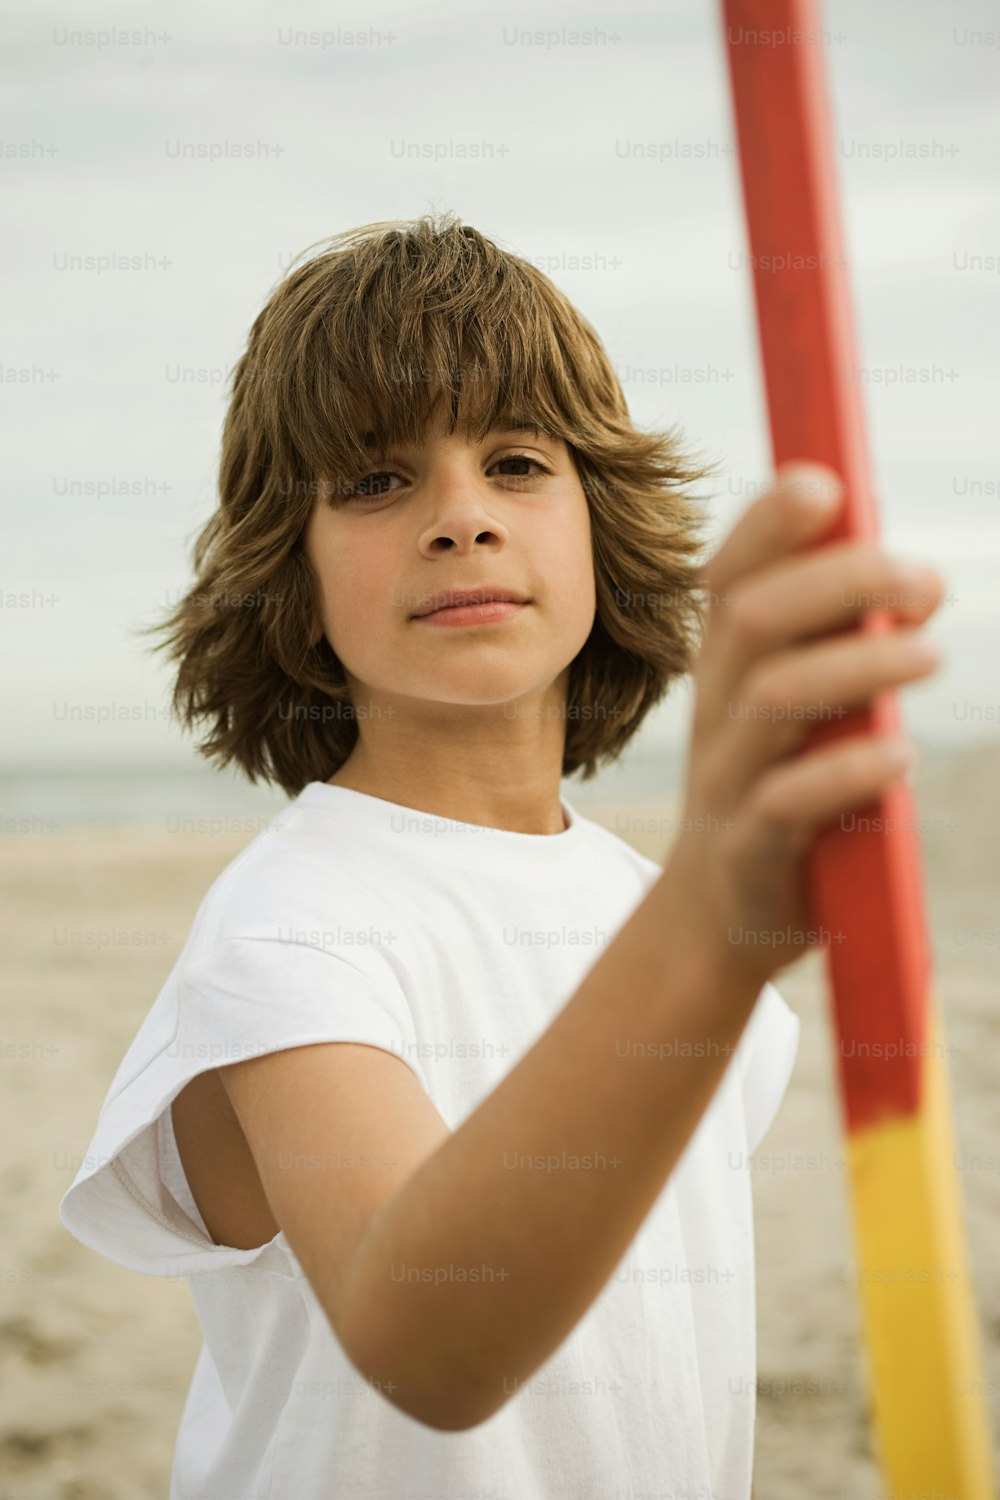 Un niño sosteniendo un poste rojo y amarillo